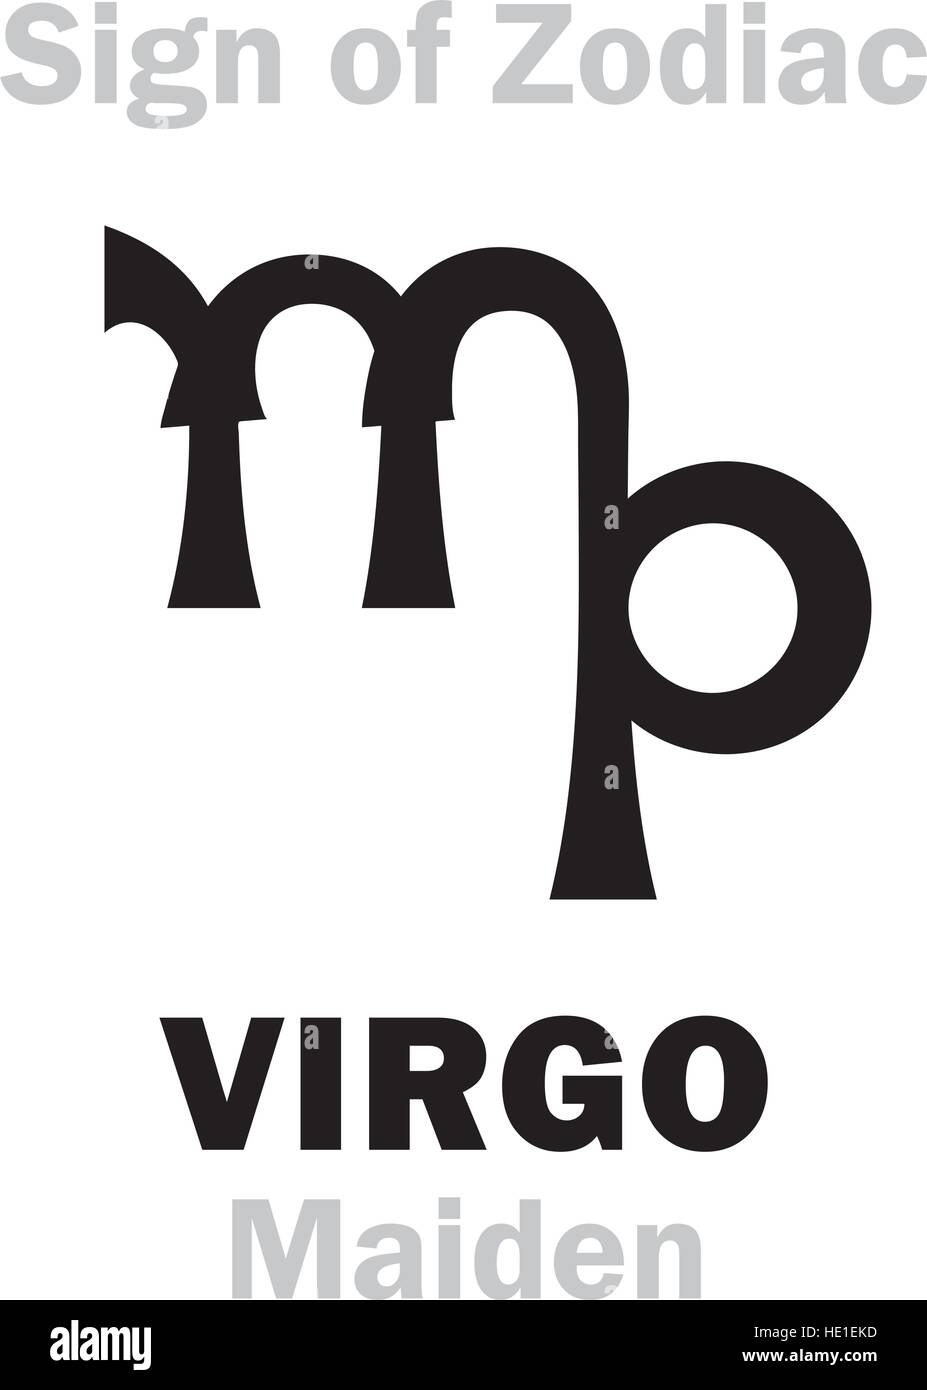 Astrologie-Alphabet: Zeichen des Tierkreises VIRGO (Jungfrau). Hieroglyphen Charakter Zeichen (einzelnes Symbol). Stock Vektor